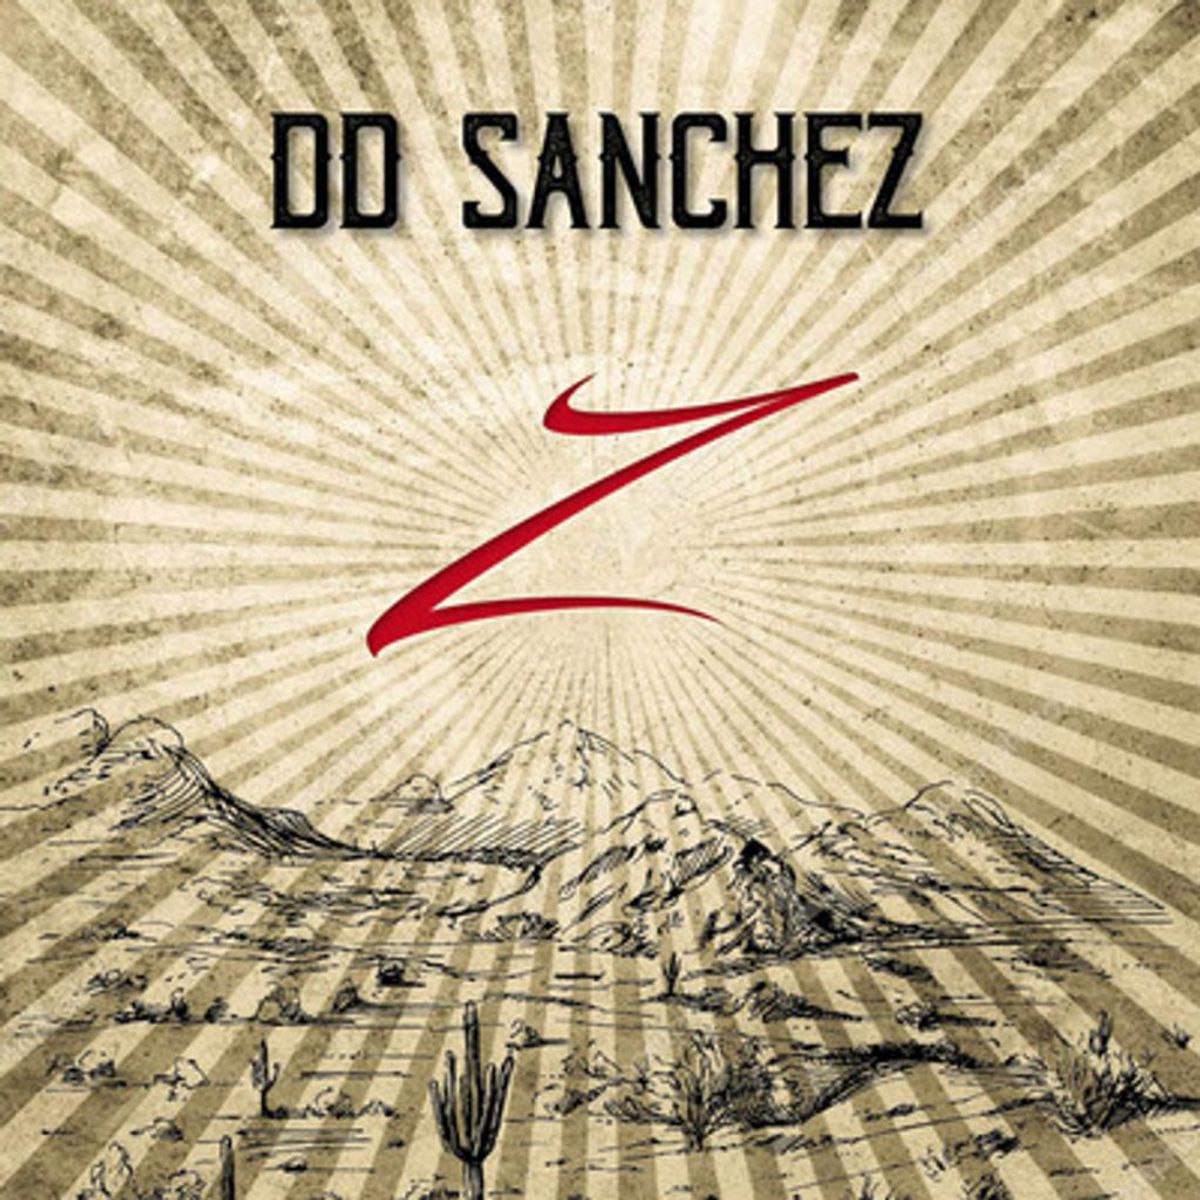 DD Sanchez - 'Z'